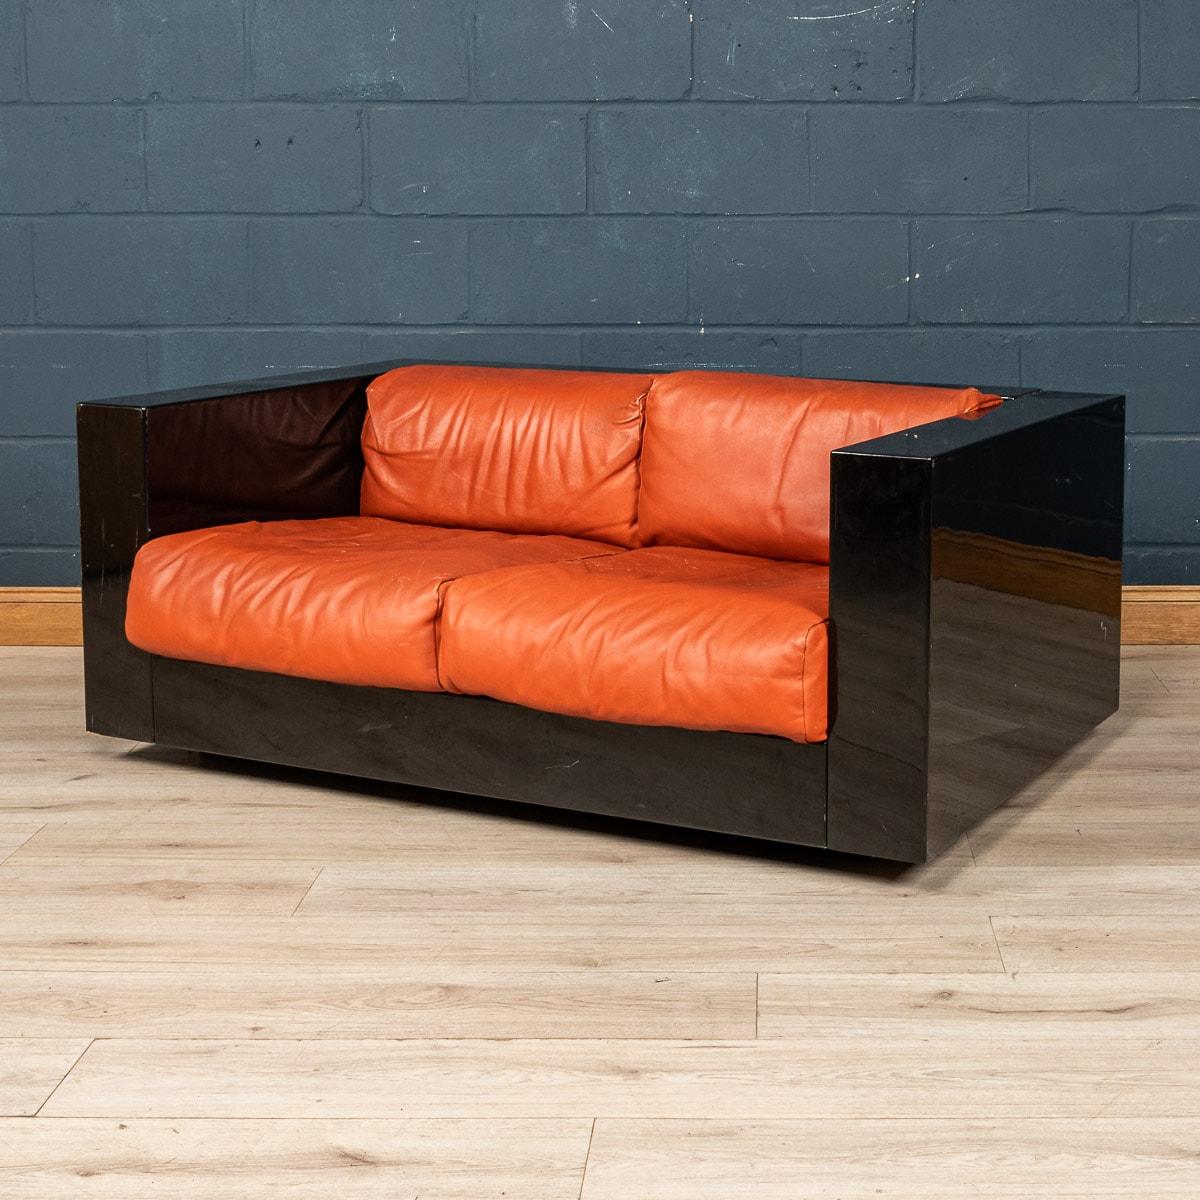 Ein schönes Zweisitzer-Sofa, entworfen von dem italienischen Designerpaar Lella und Massimo Vignelli. Das von Poltronova in Florenz hergestellte Sofa ist ein Designklassiker mit einer wunderbaren Kombination aus Schwarz und Rot für das Gestell bzw.